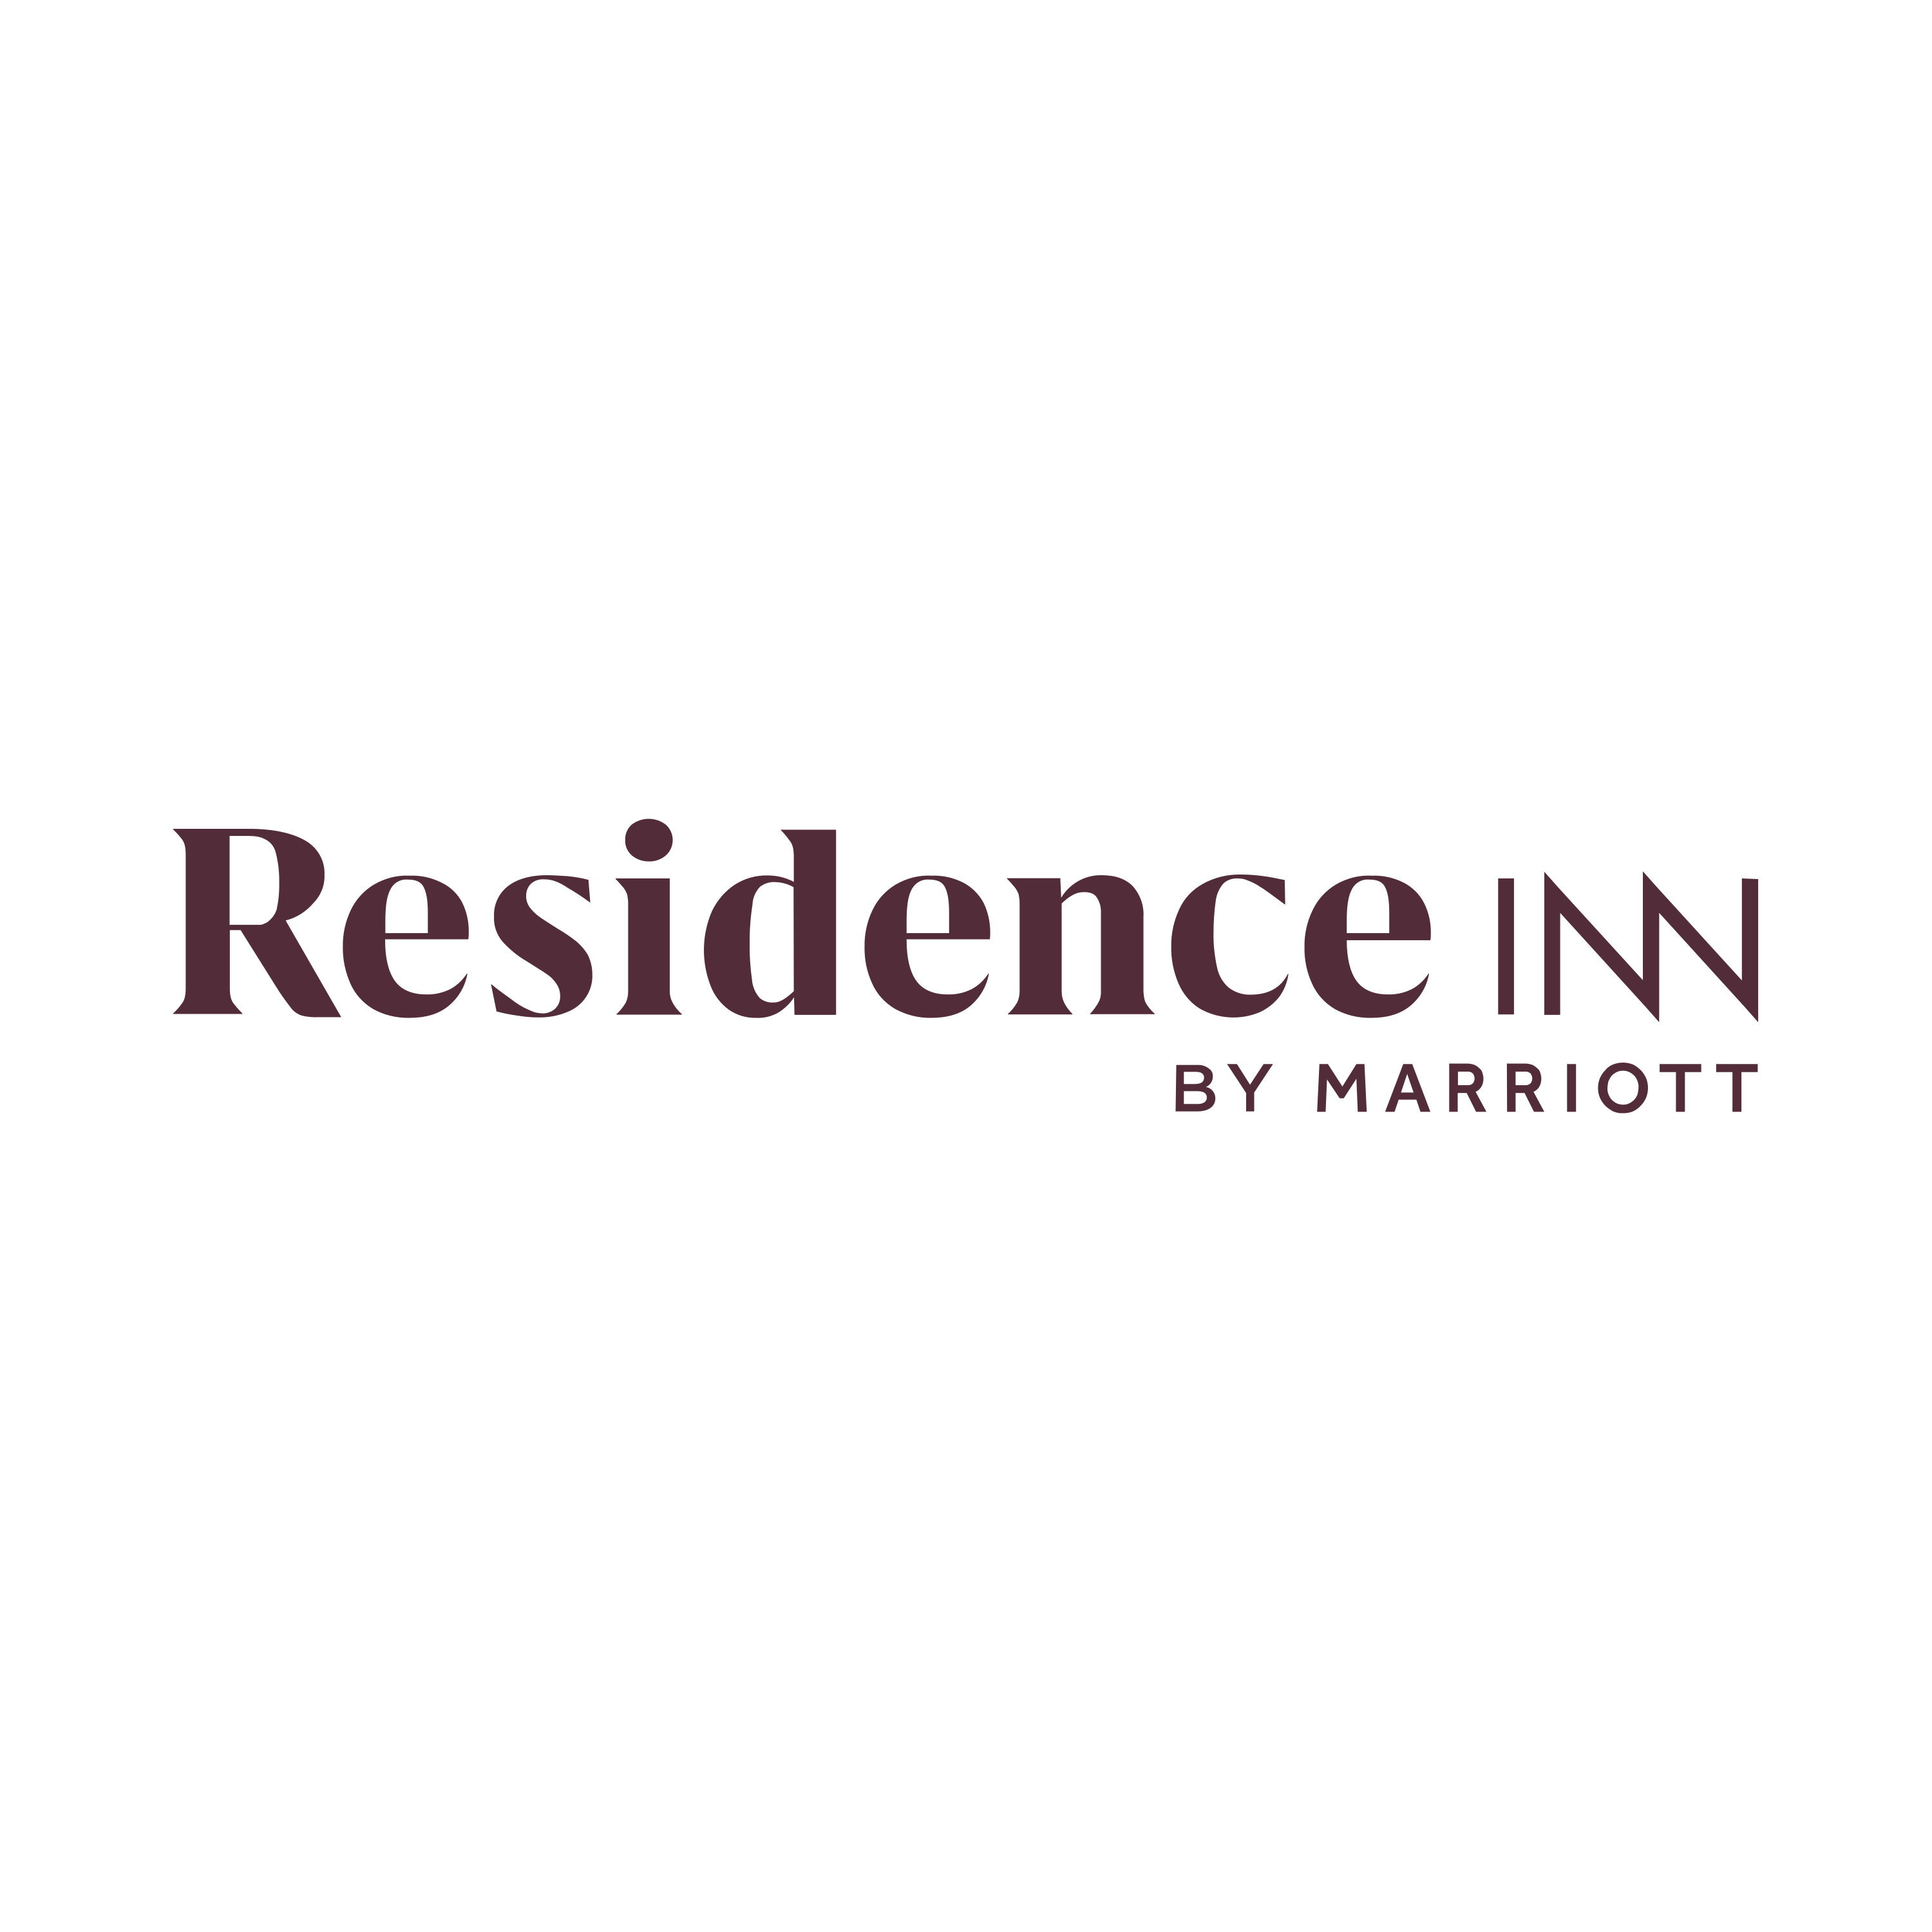 Residence Inn Logo  Transparent Image